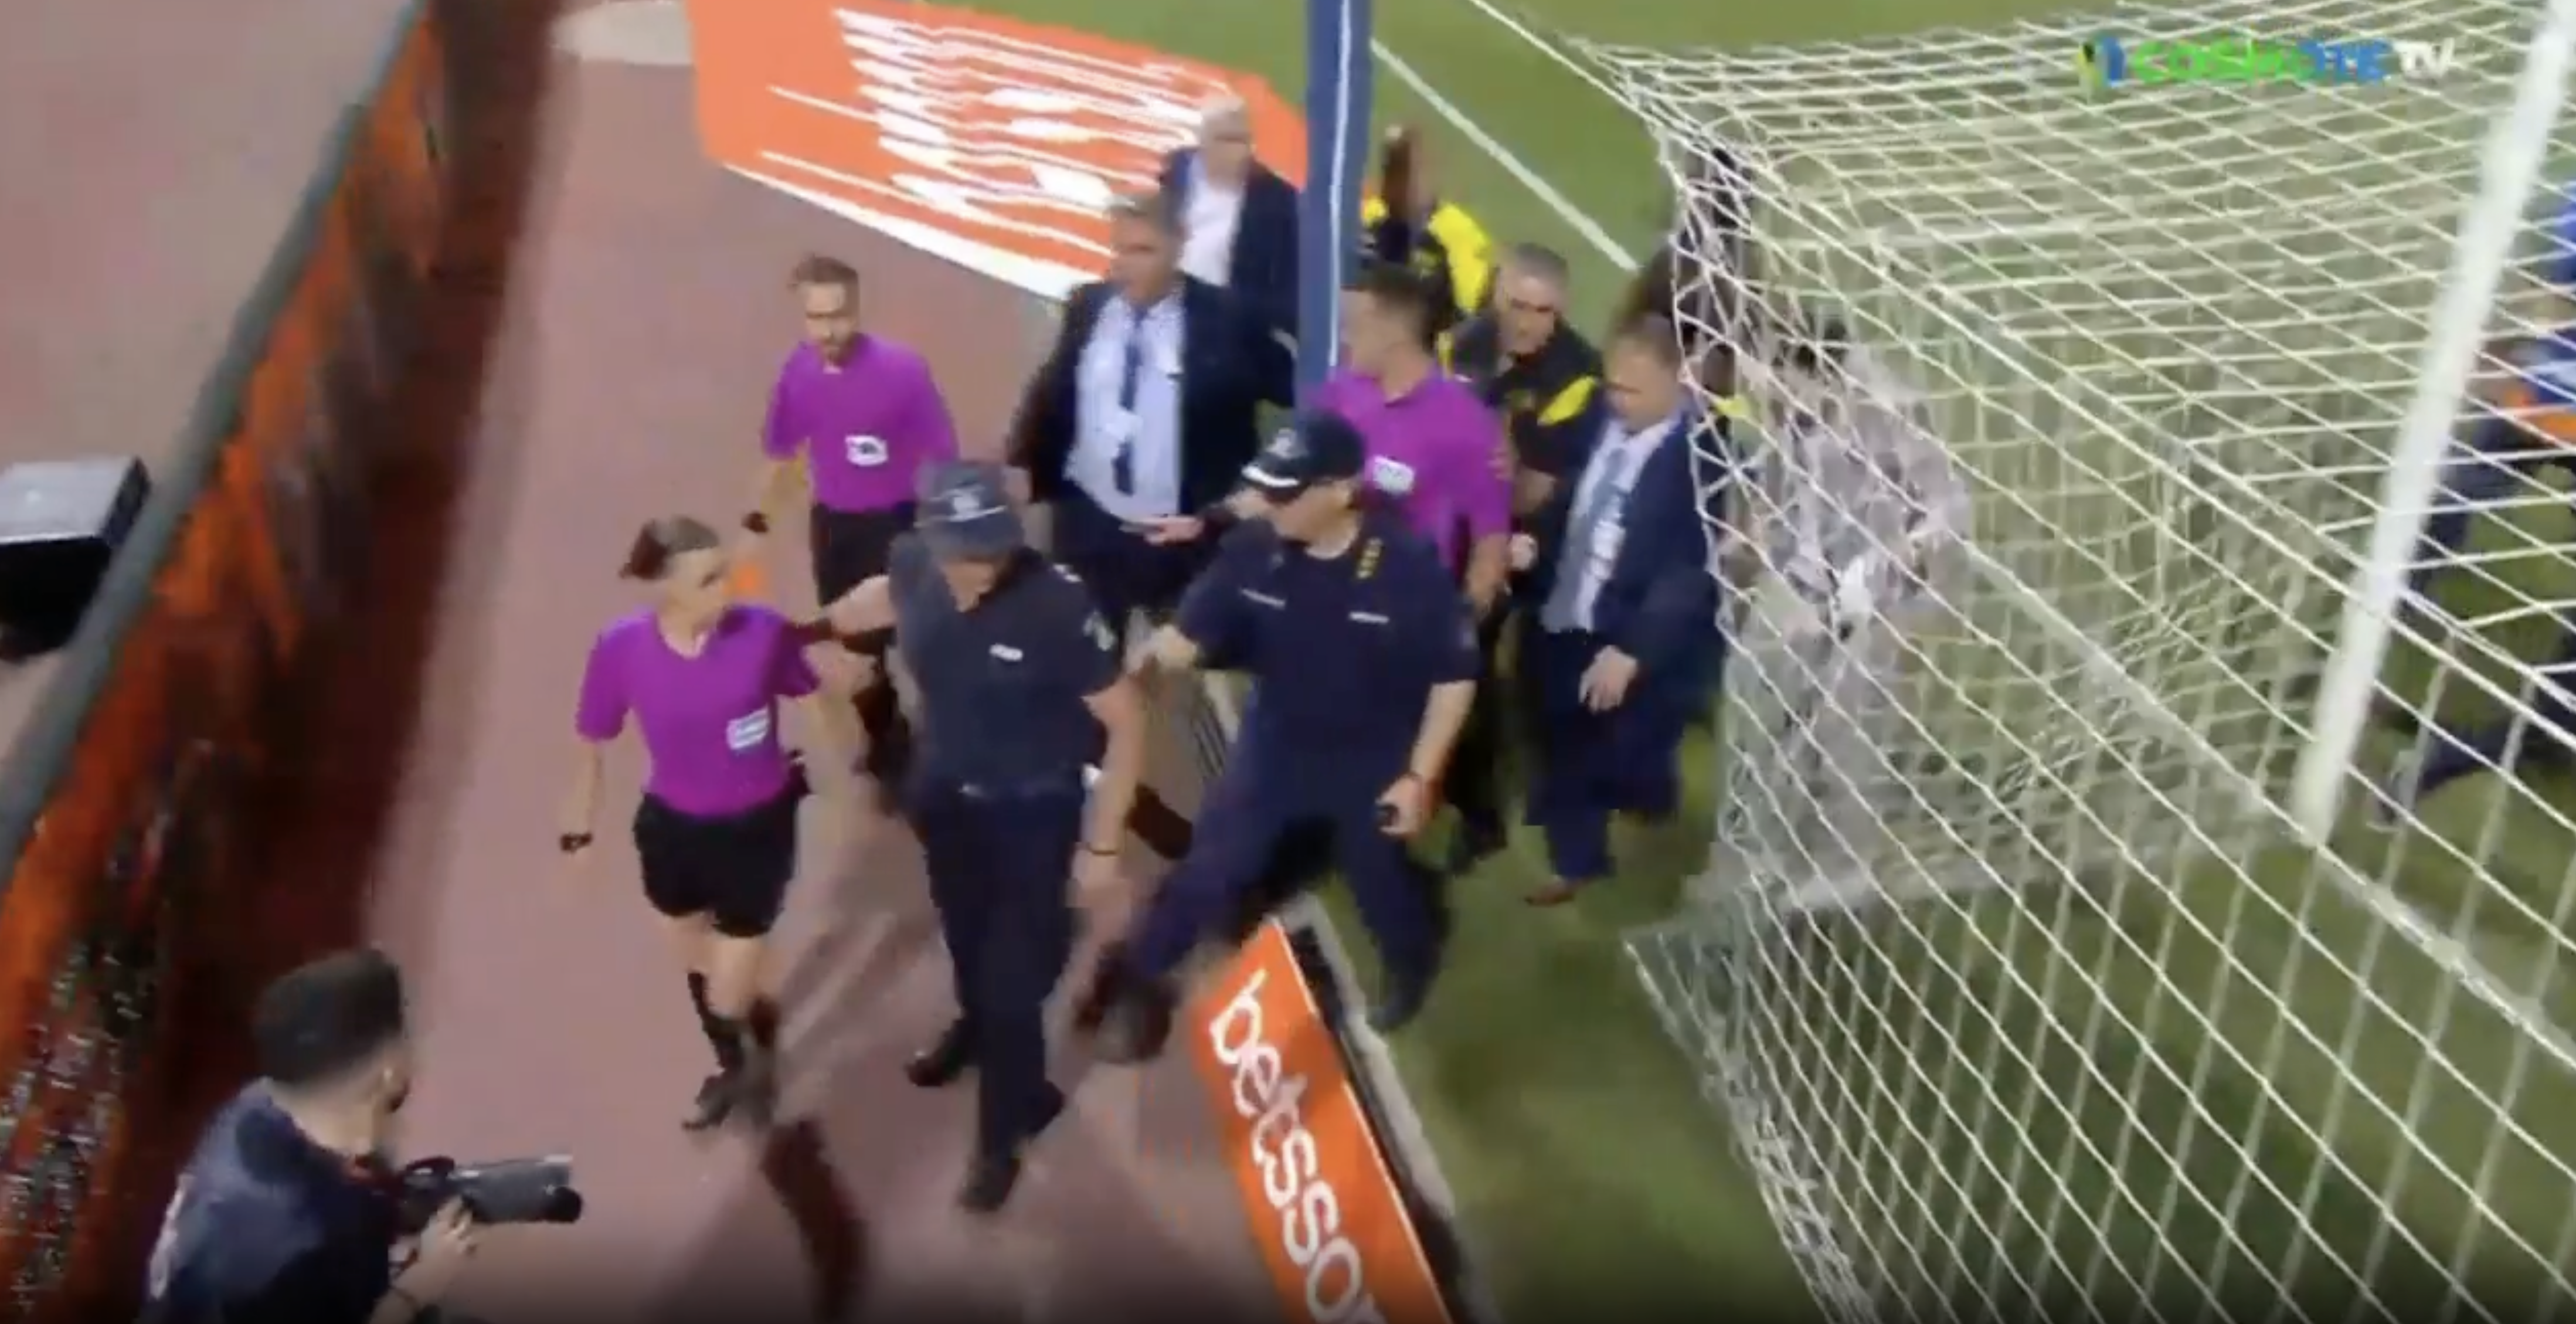 Auf einem Video war zu sehen, wie die Schiedsrichter von Polizisten vom Spielfeld eskortiert wurden.